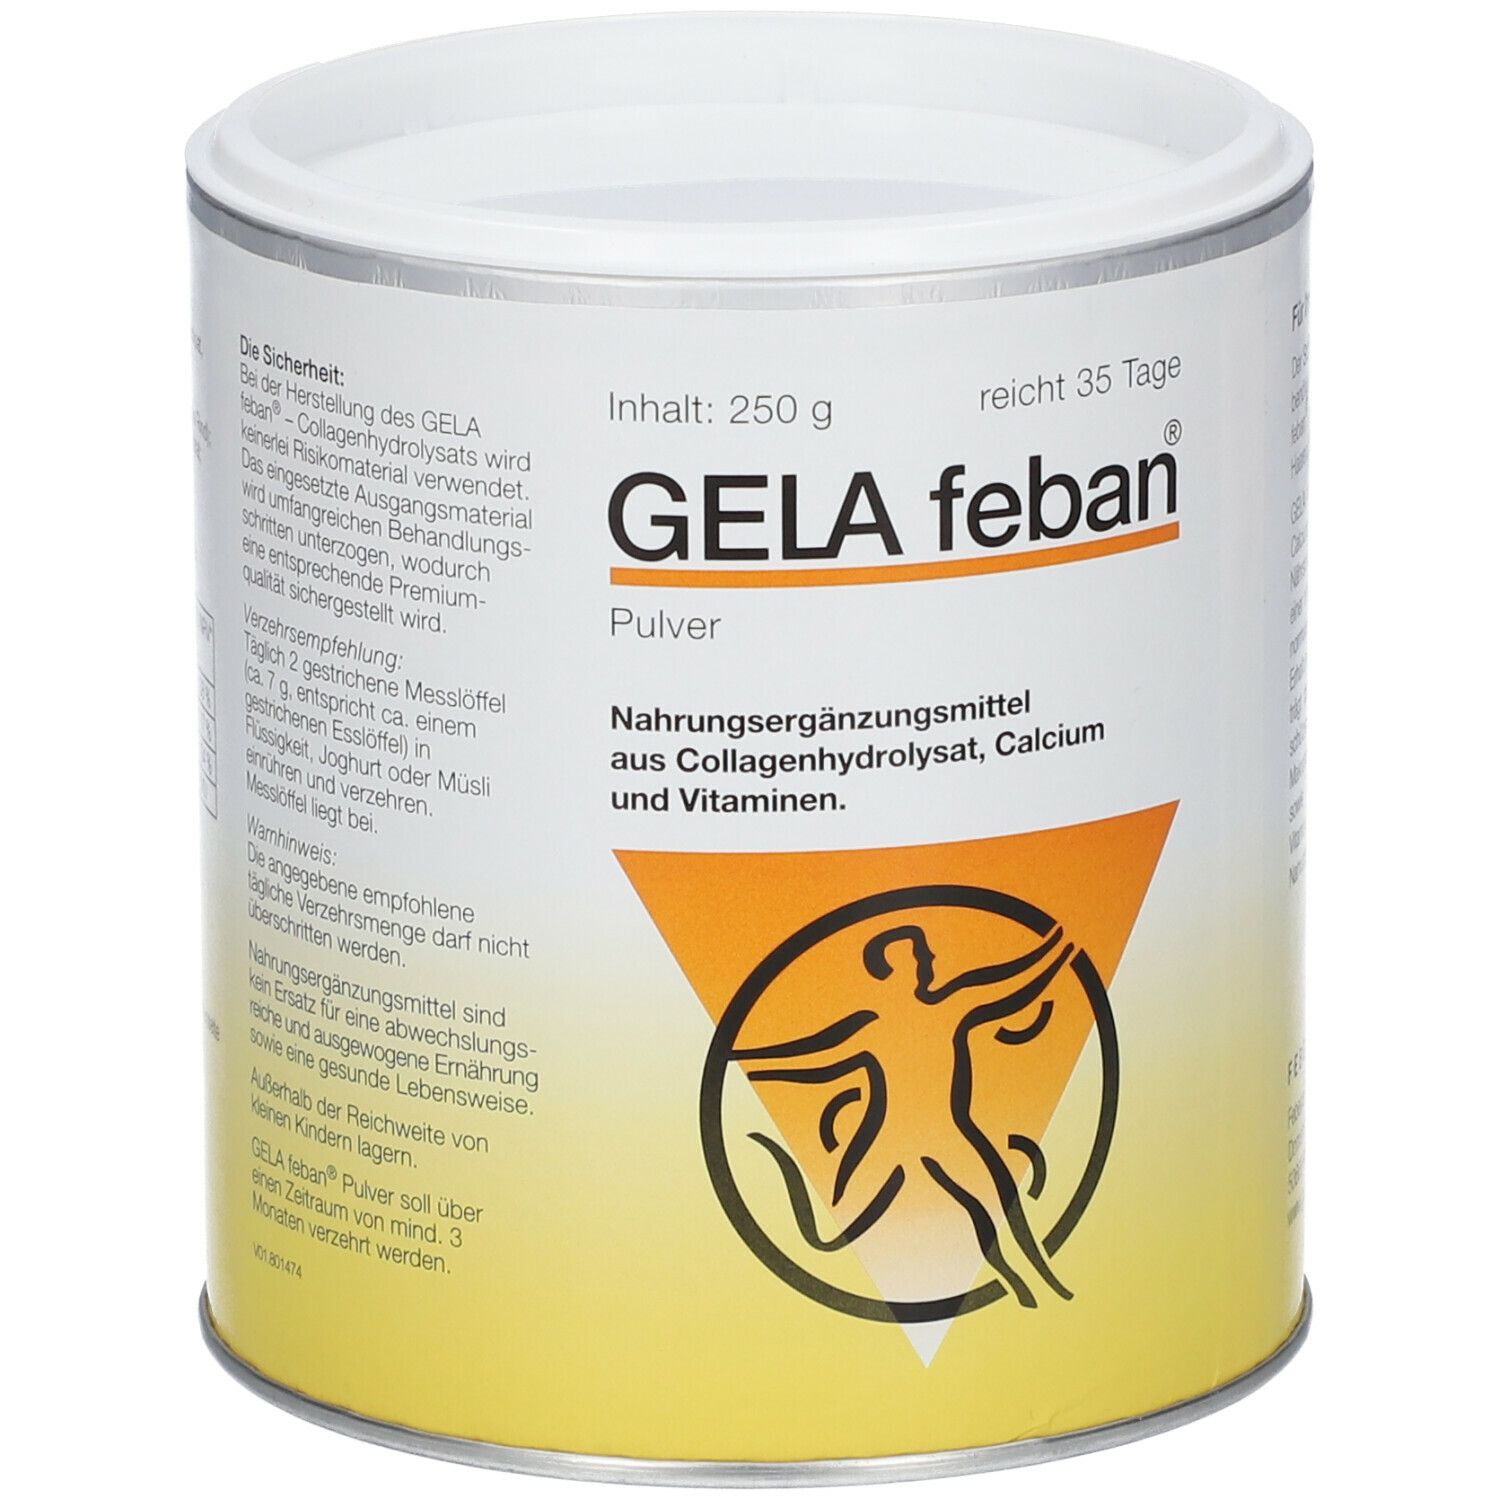 GELA feban® mit Collagenhydrolysat